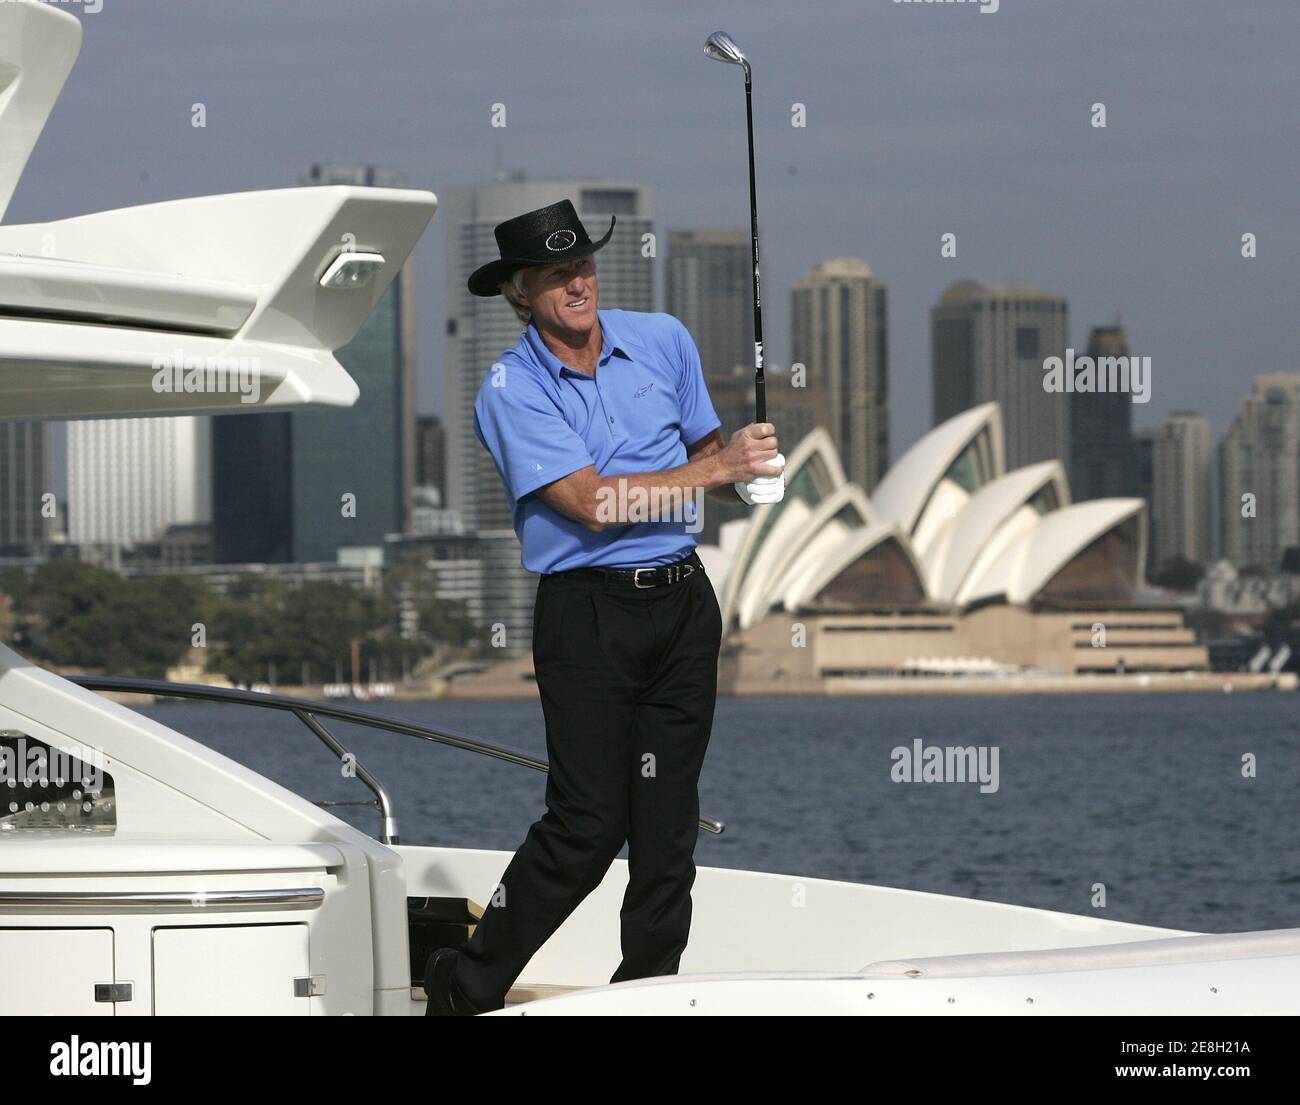 El golfista australiano Greg Norman observa el progreso de un golf imaginario desde la parte trasera de un yate de lujo en el puerto de Sydney el 11 de mayo de 2006. Norman promovía el campeonato de golf Australian Open que se celebrará en Sydney del 13 al 19 de noviembre. REUTERS/will Burgess Foto de stock